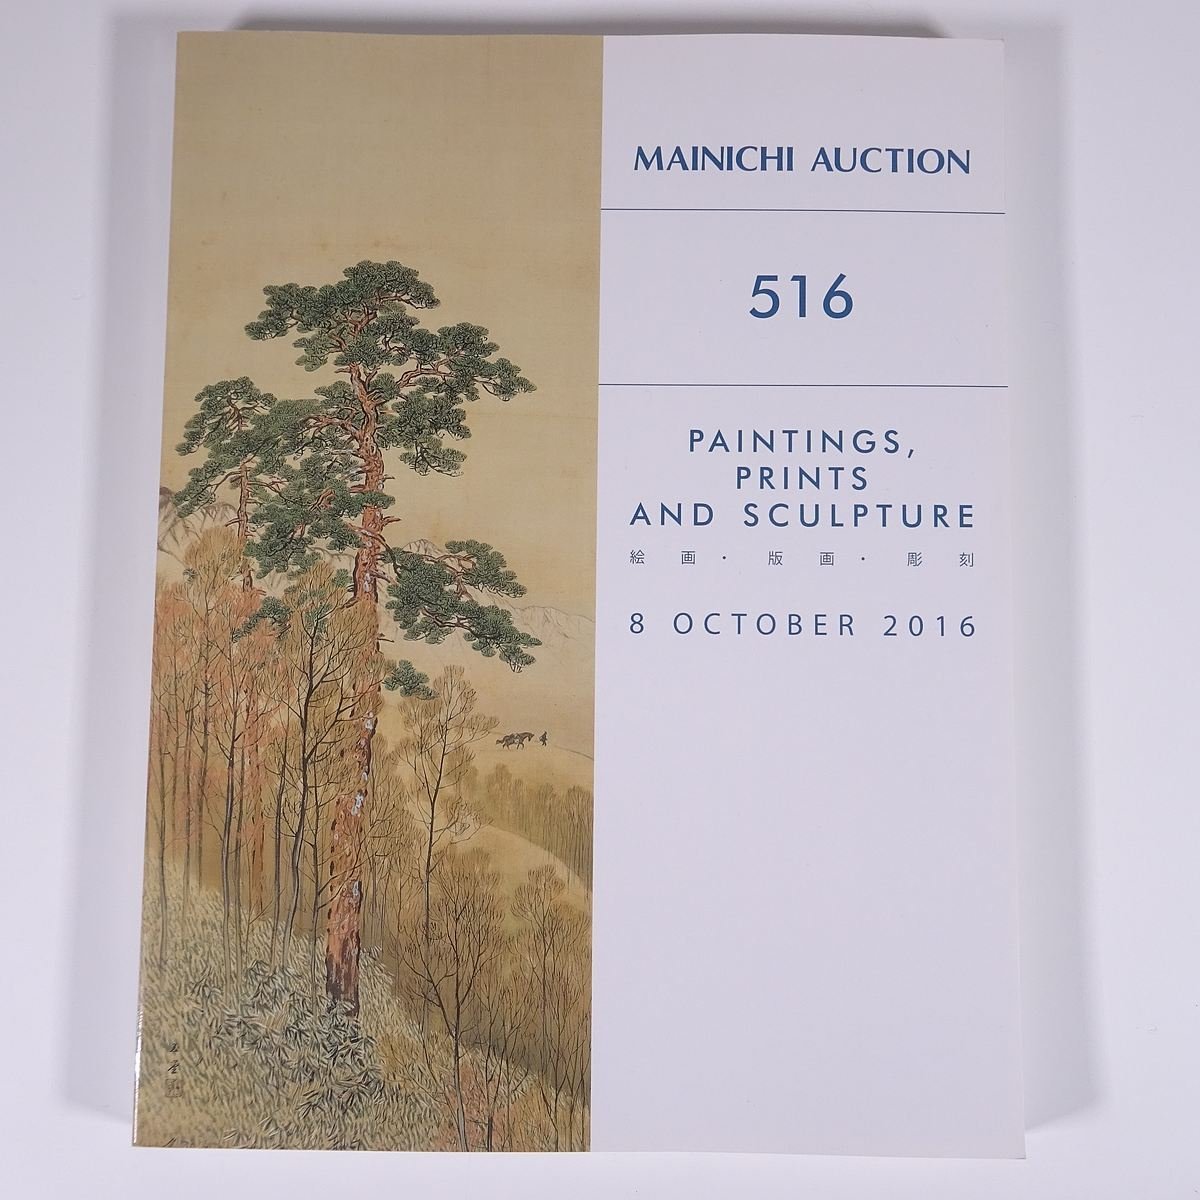 मेनिची नीलामी 516 पेंटिंग्स, प्रिंटों, मूर्तियां 2016/10/8 मैनिची नीलामी बड़ी पुस्तक नीलामी सूची सूची कला ललित कला, चित्रकारी, कला पुस्तक, संग्रह, सूची